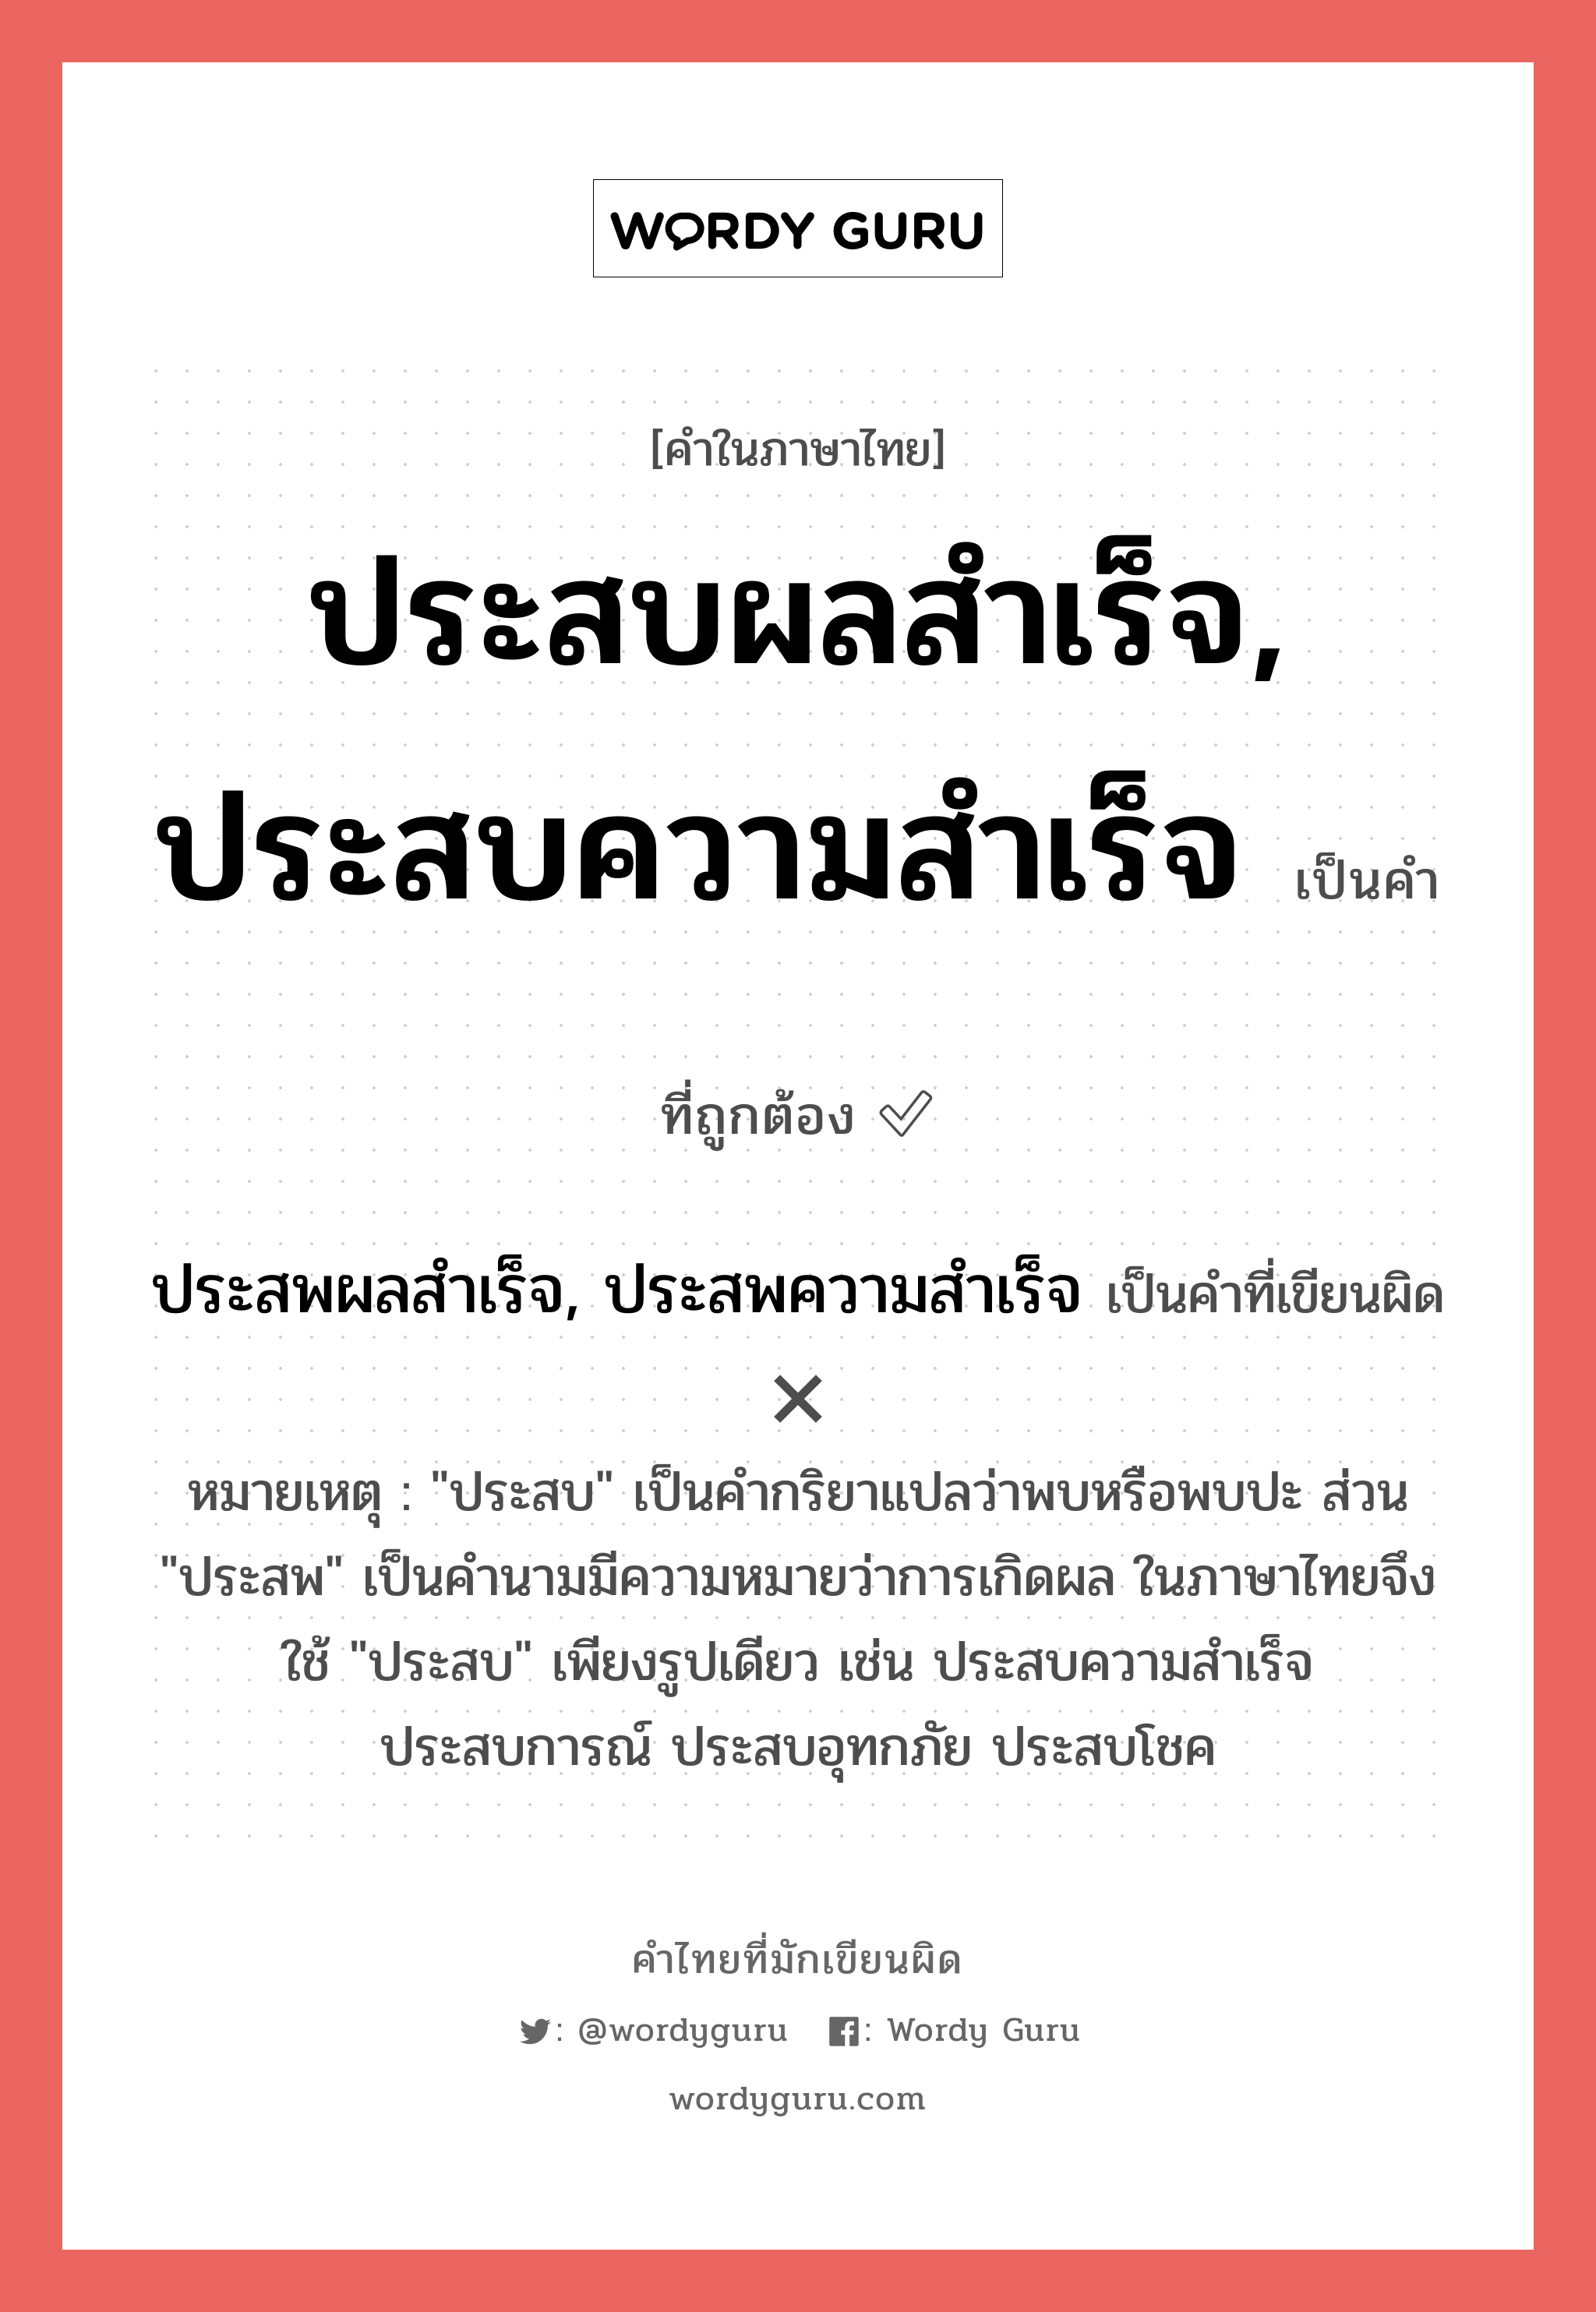 ประสบผลสำเร็จ, ประสบความสำเร็จ หรือ ประสพผลสำเร็จ, ประสพความสำเร็จ คำไหนเขียนถูก?, คำในภาษาไทยที่มักเขียนผิด ประสบผลสำเร็จ, ประสบความสำเร็จ คำที่ผิด ❌ ประสพผลสำเร็จ, ประสพความสำเร็จ หมายเหตุ "ประสบ" เป็นคำกริยาแปลว่าพบหรือพบปะ ส่วน "ประสพ" เป็นคำนามมีความหมายว่าการเกิดผล ในภาษาไทยจึงใช้ "ประสบ" เพียงรูปเดียว เช่น ประสบความสำเร็จ ประสบการณ์ ประสบอุทกภัย ประสบโชค